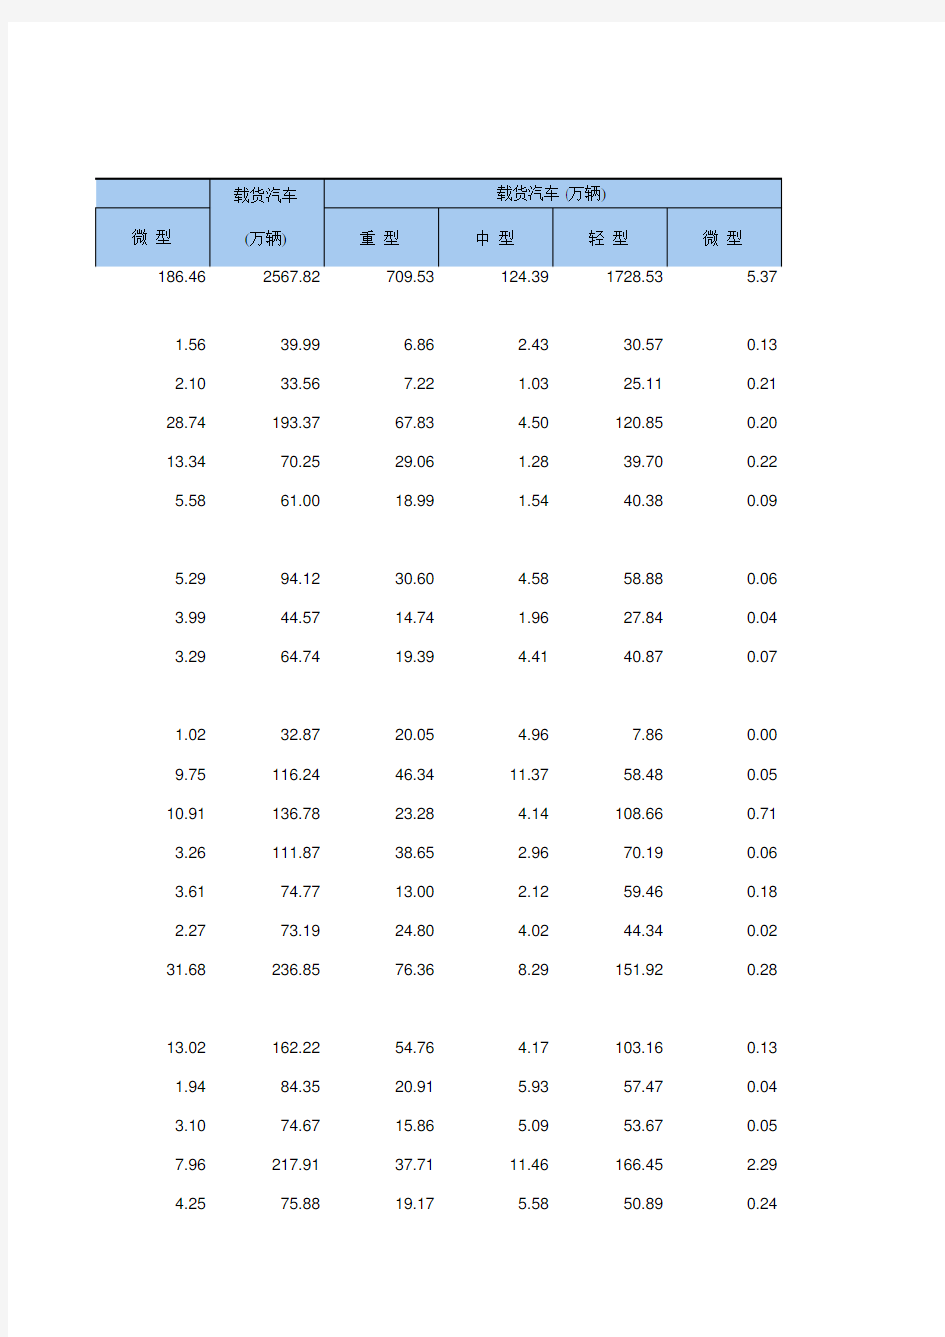 16-20 中国统计年鉴数据处理：民用汽车拥有量(全国与各省级指标,便于2002-2018多年数据分析对比)